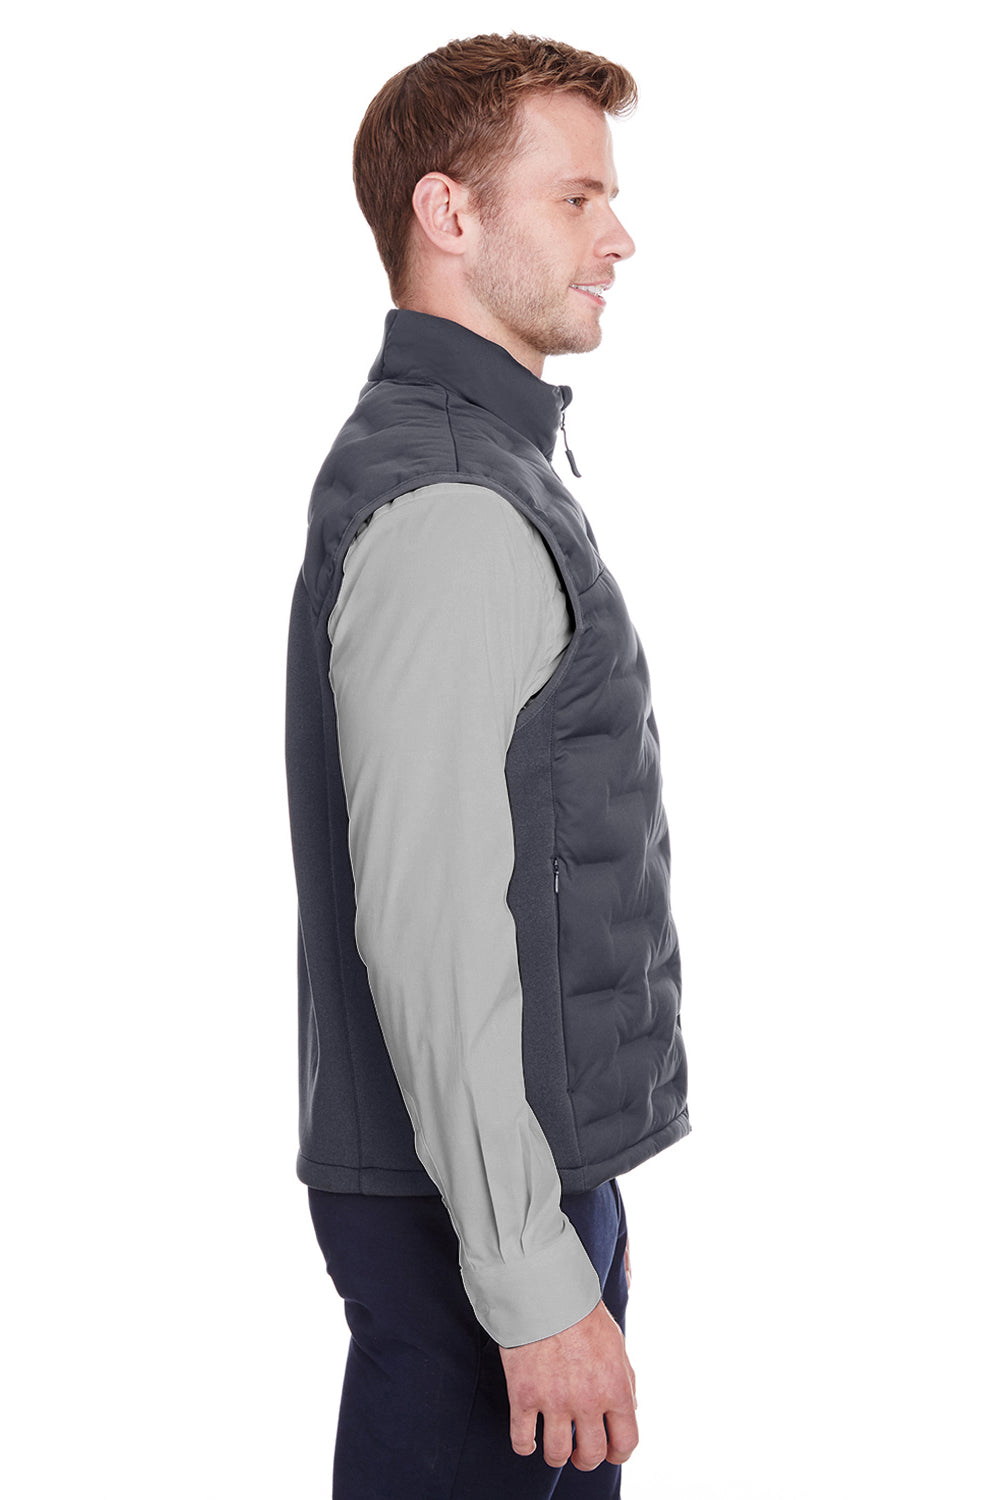 North End NE709 Mens Pioneer Hybrid Waterproof Full Zip Vest Carbon Grey/Black Side